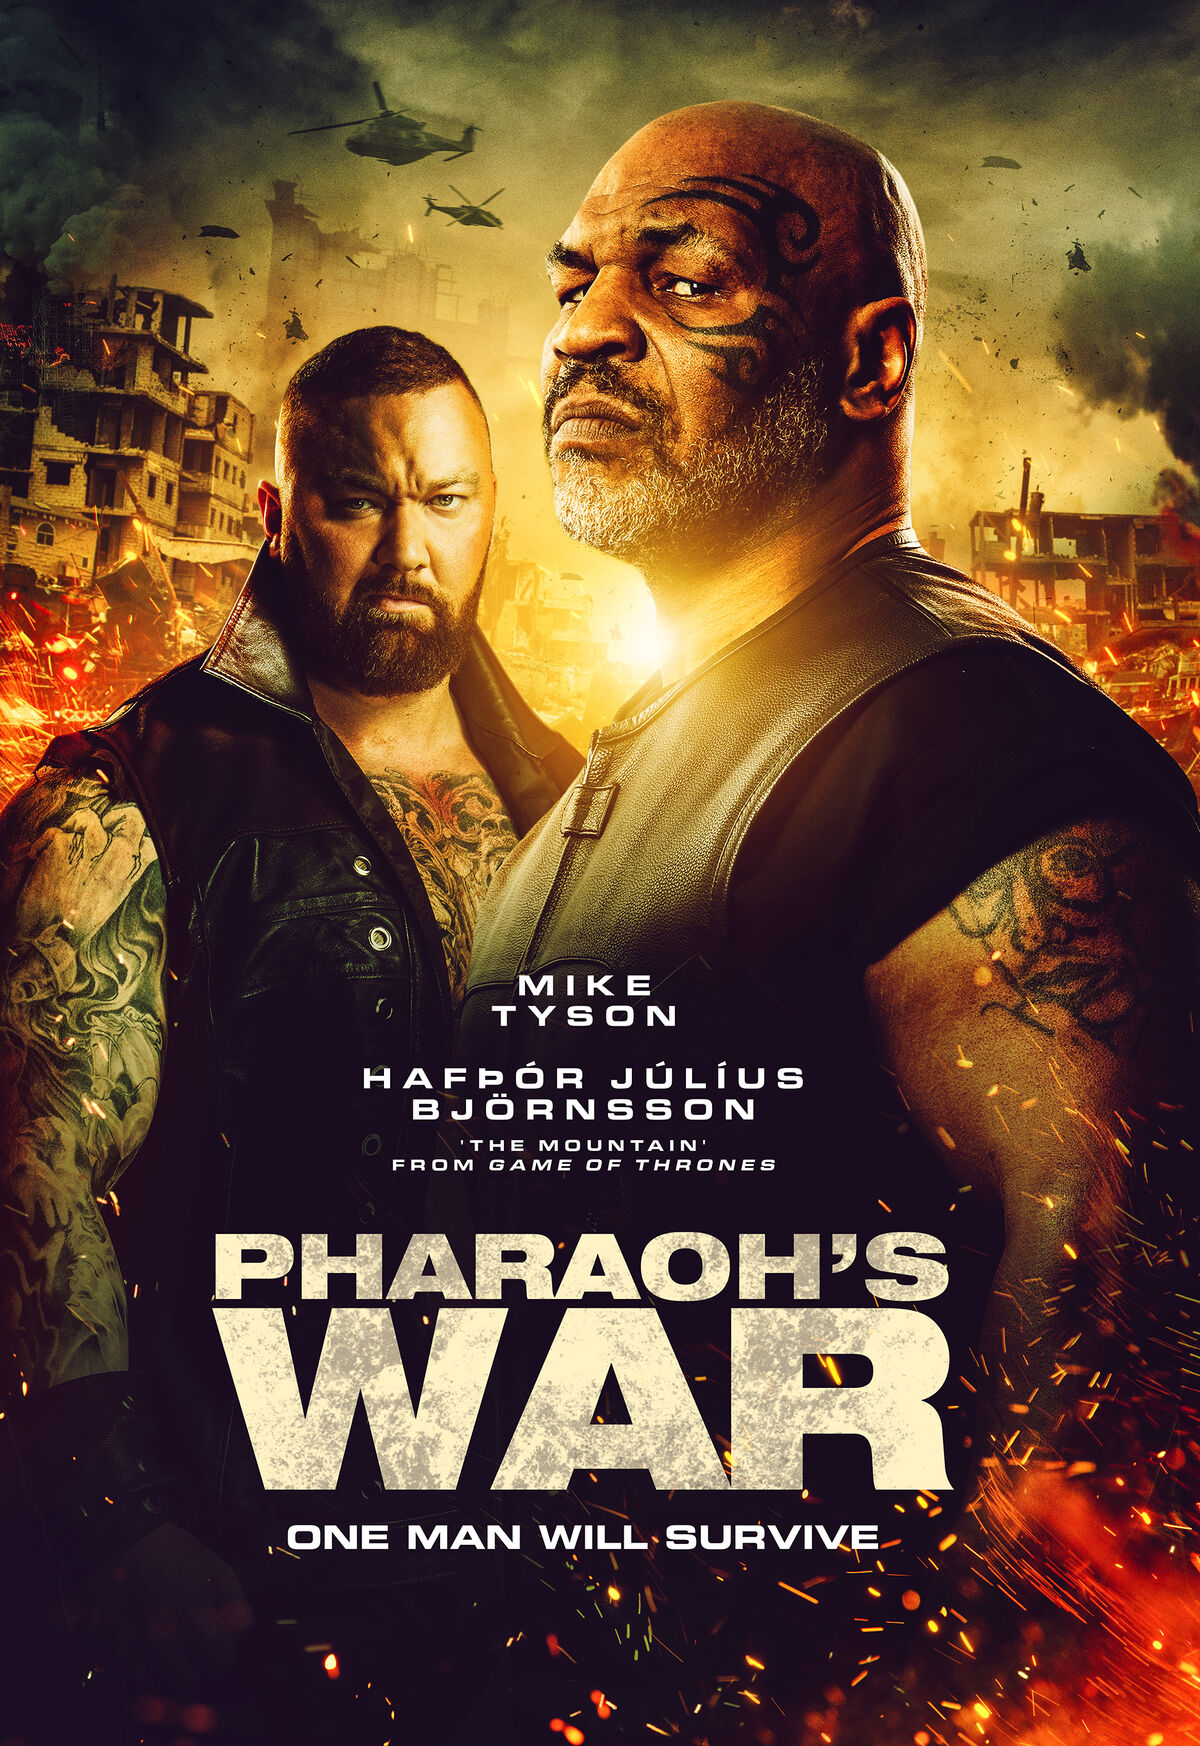 War (2019 film) - Wikipedia